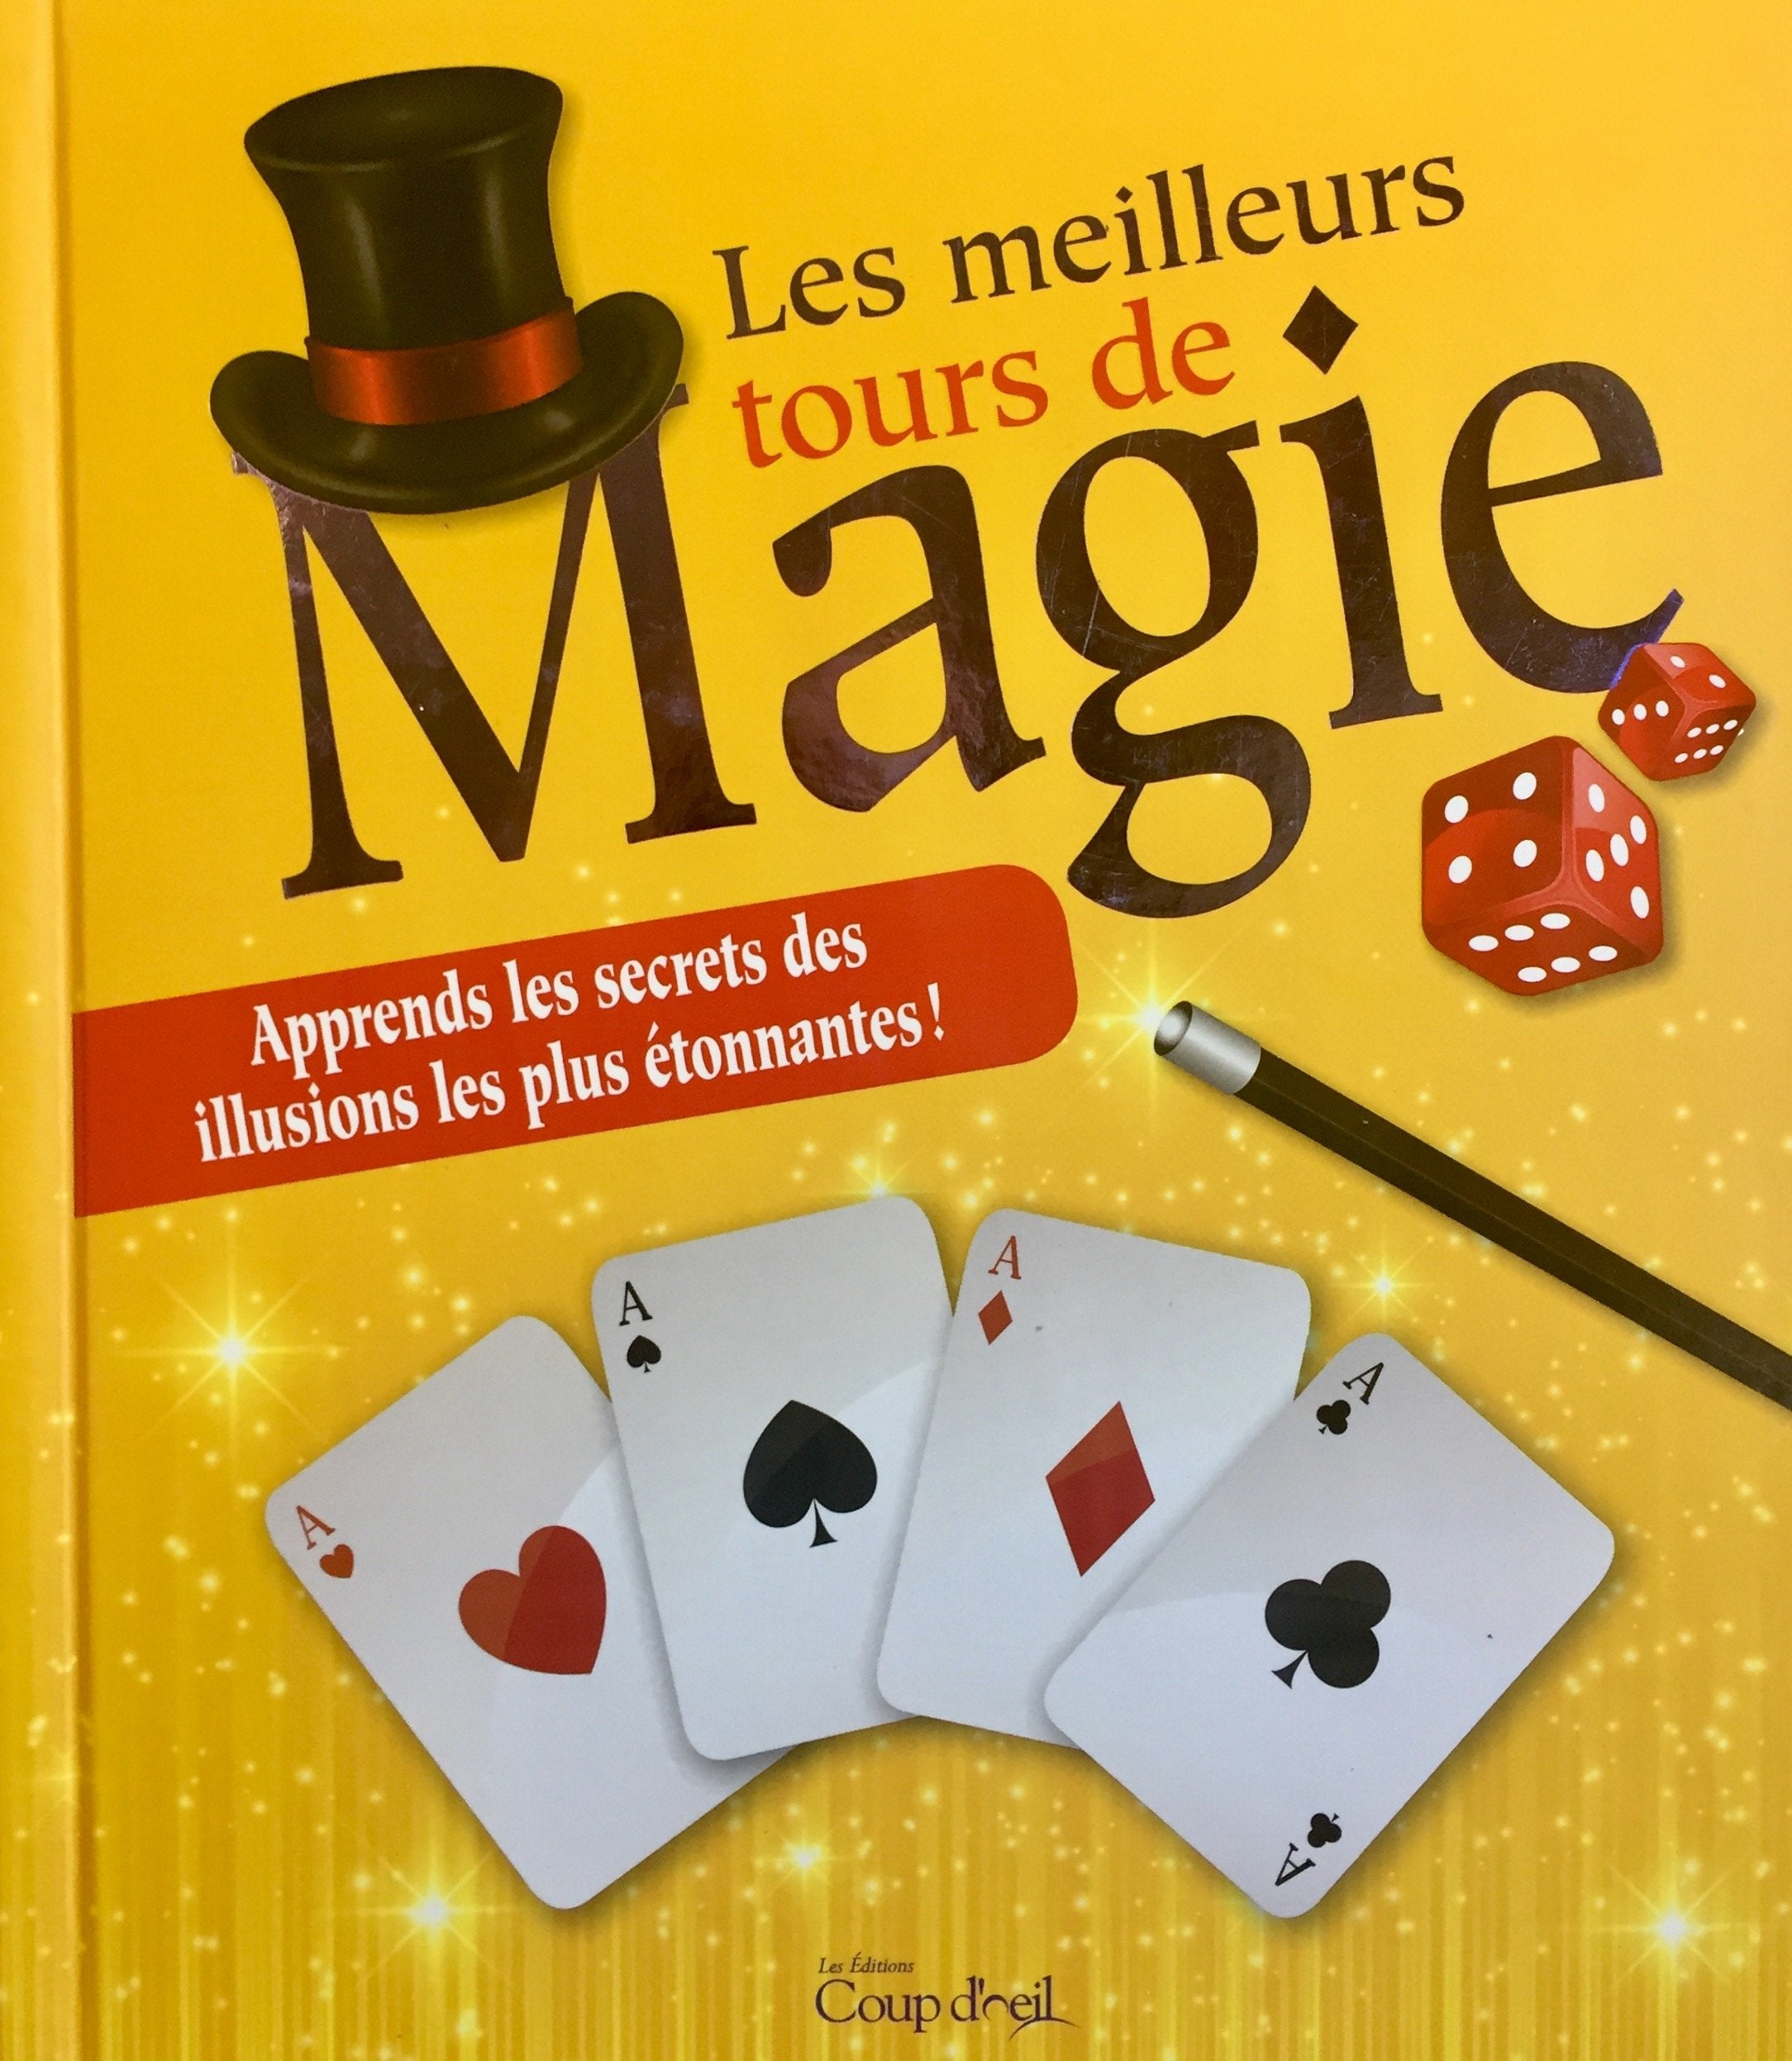 45 TOURS DE MAGIE. Illusionnisme et tours de cartes